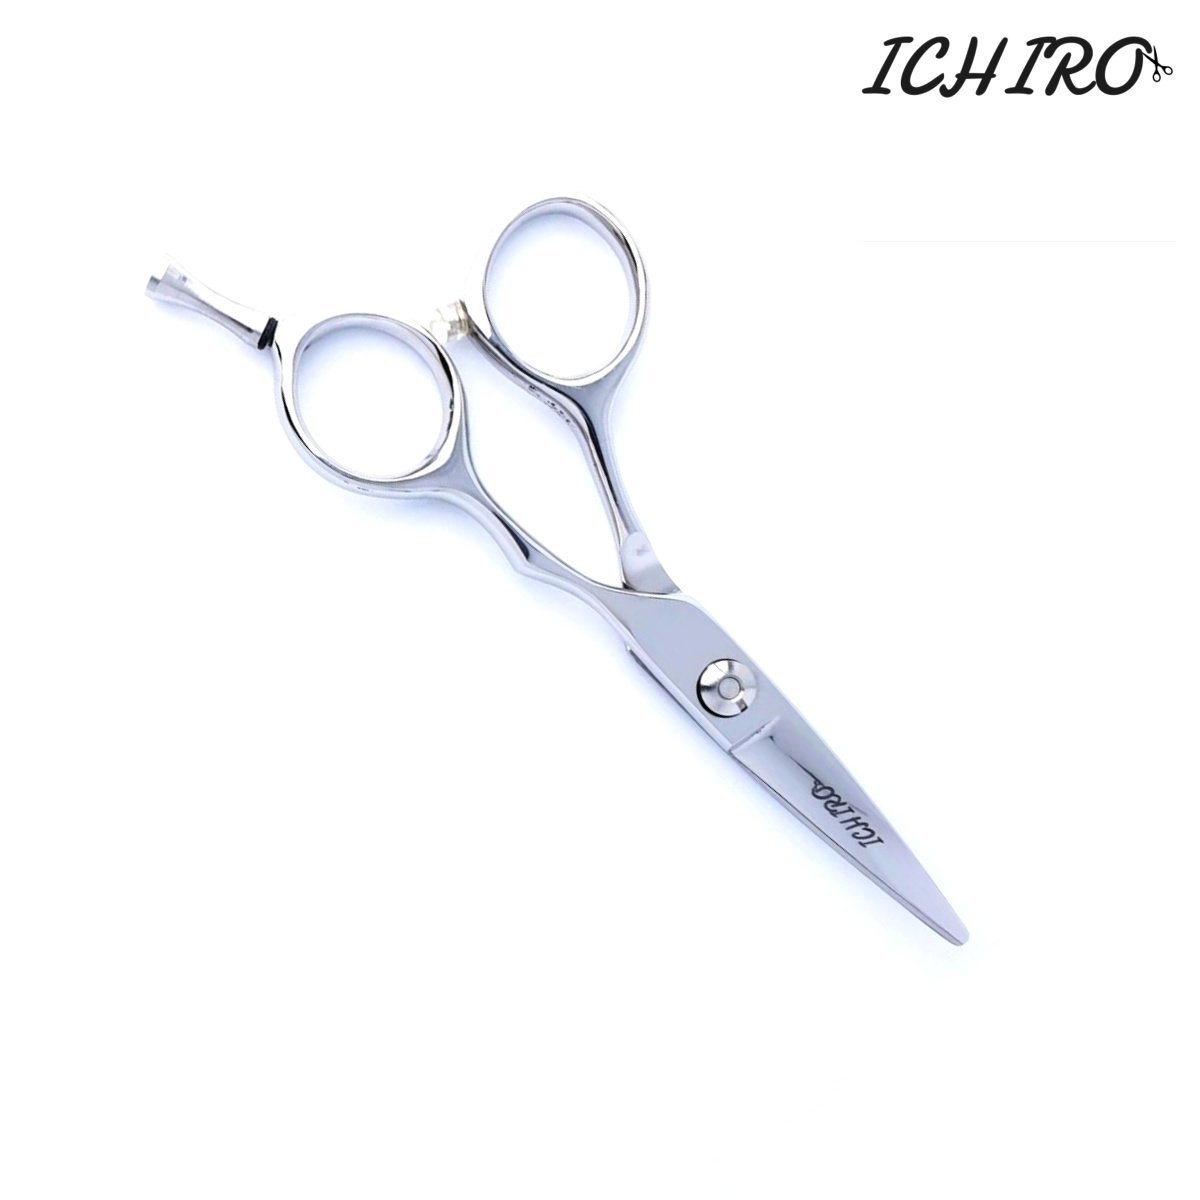 The Ichiro Ichiko Travel Hair Scissors